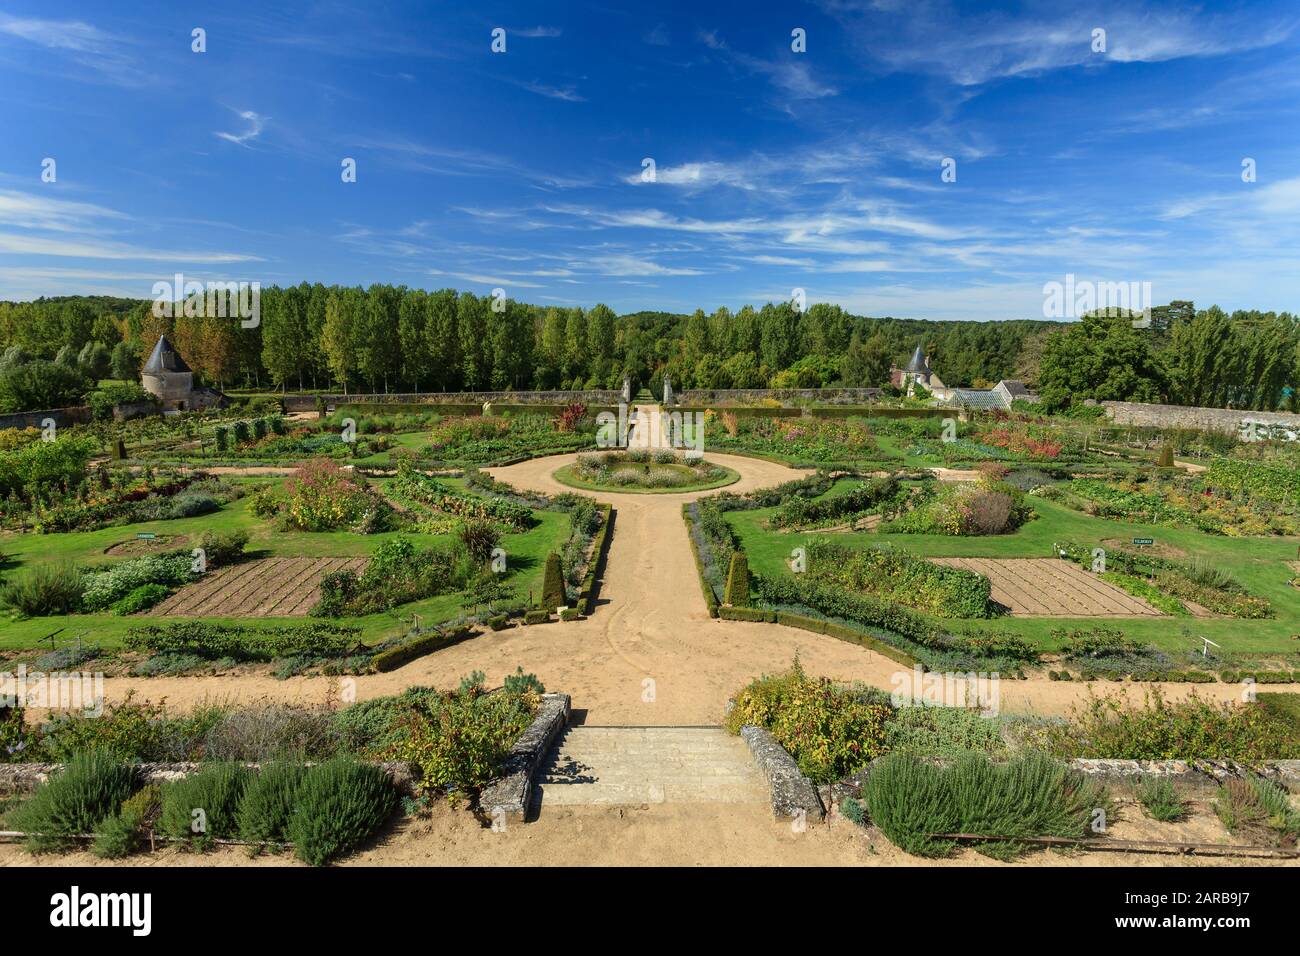 Francia, Indre et Loire, Chancay, Chateau de Valmer giardini, l'orto visto dalla Terrazza di Leda (menzione obbligatoria Chateau de Valmer) Foto Stock